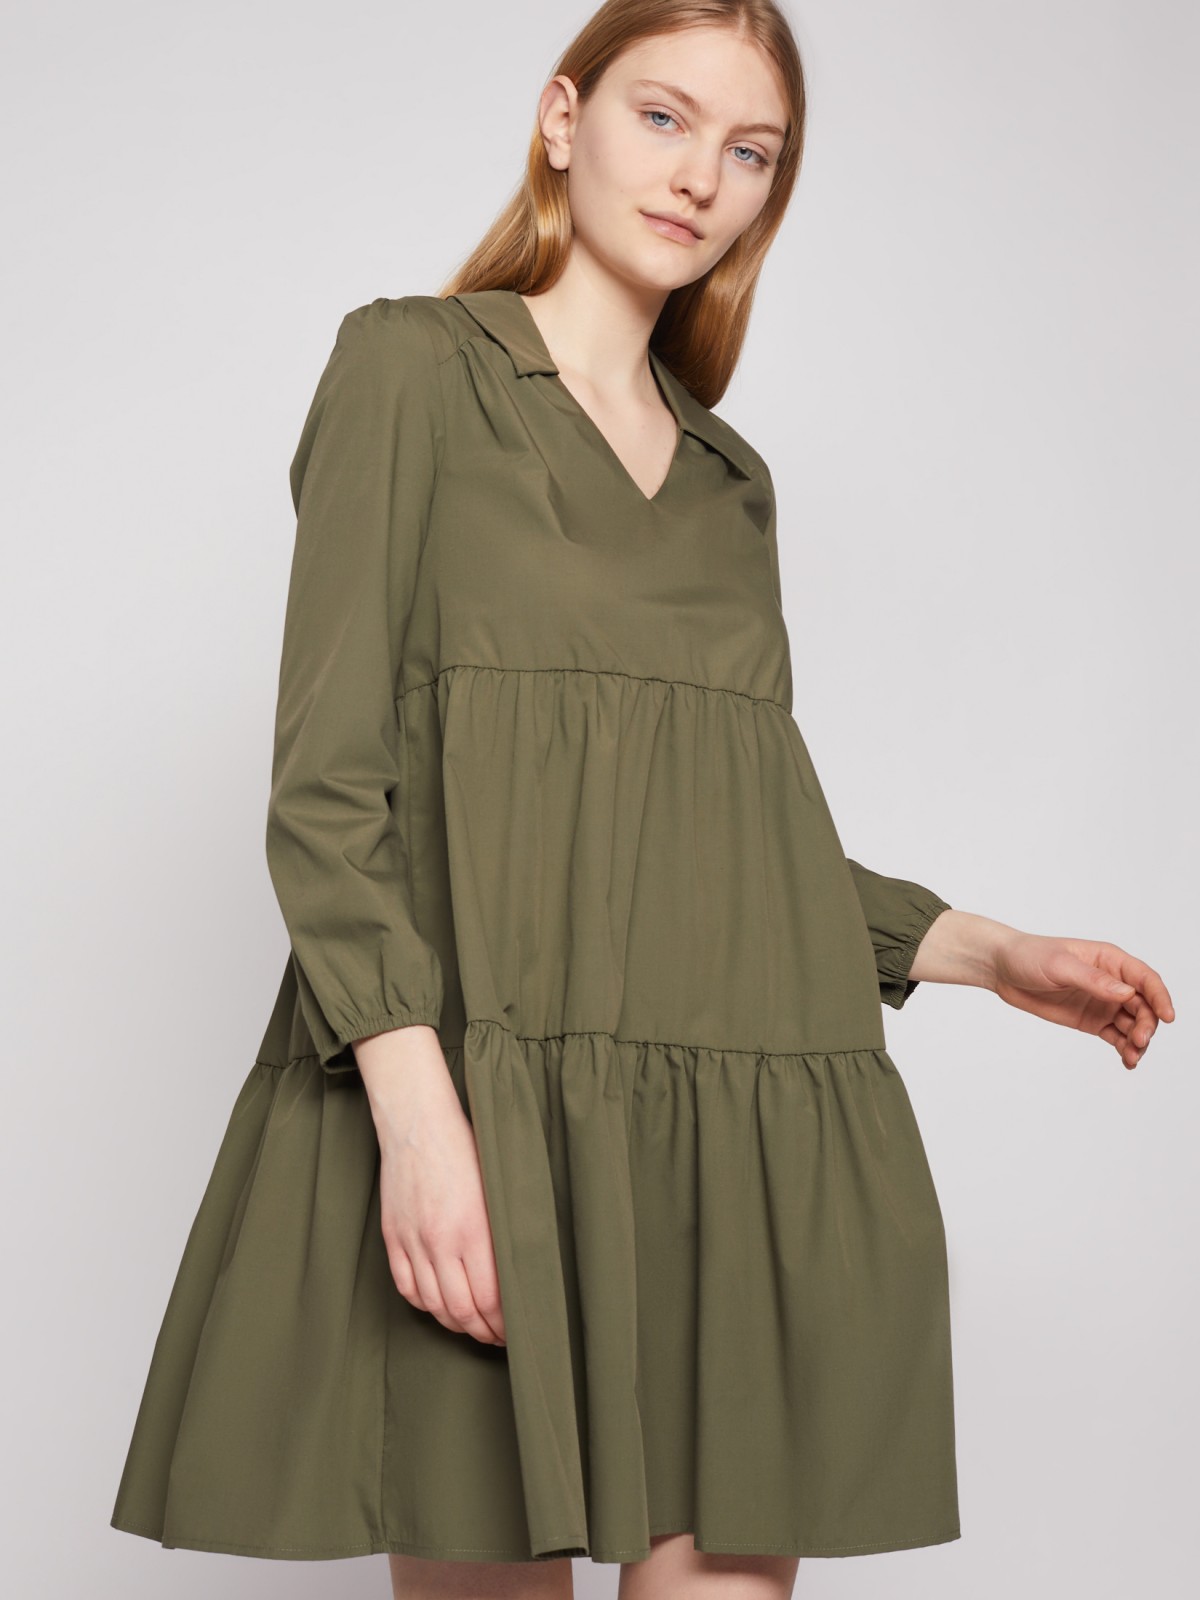 Купить платье женское Zolla в интернет-магазине | chelmass.ru